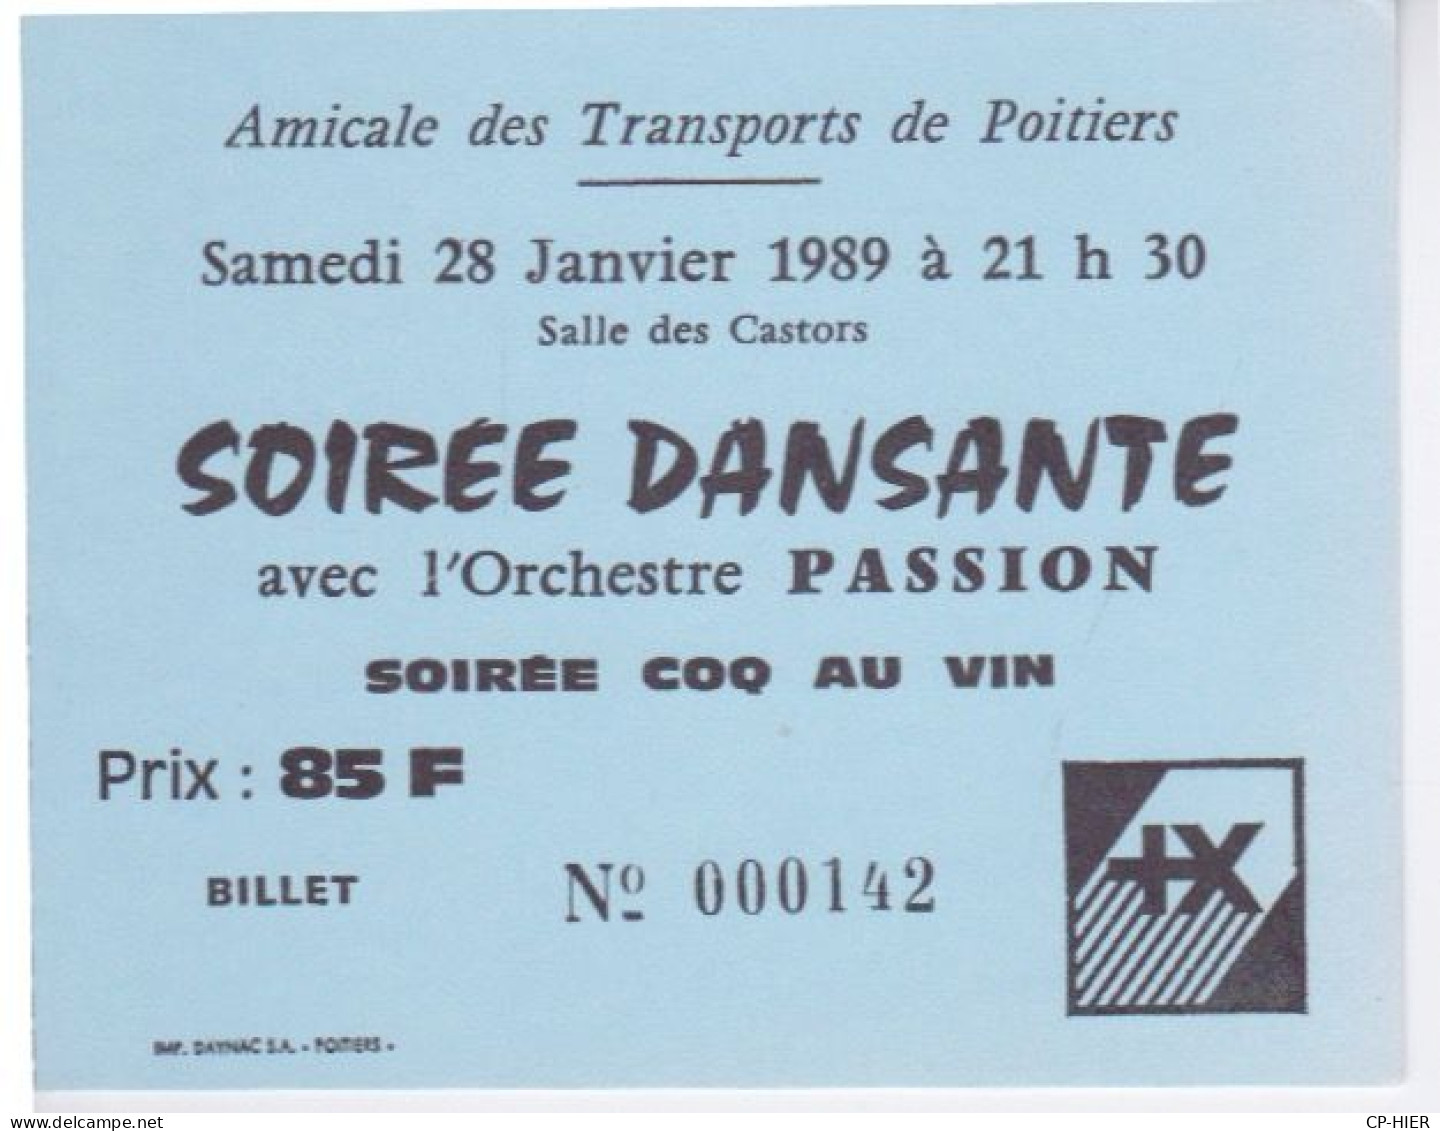 86 - POITIERS - AMICALE DES TRANSPORTS - SOIREE DANSANTE  -  ORCHESTRE PASSION - SOIREE COQ AU VIN SALLE CASTORS - Tickets - Vouchers